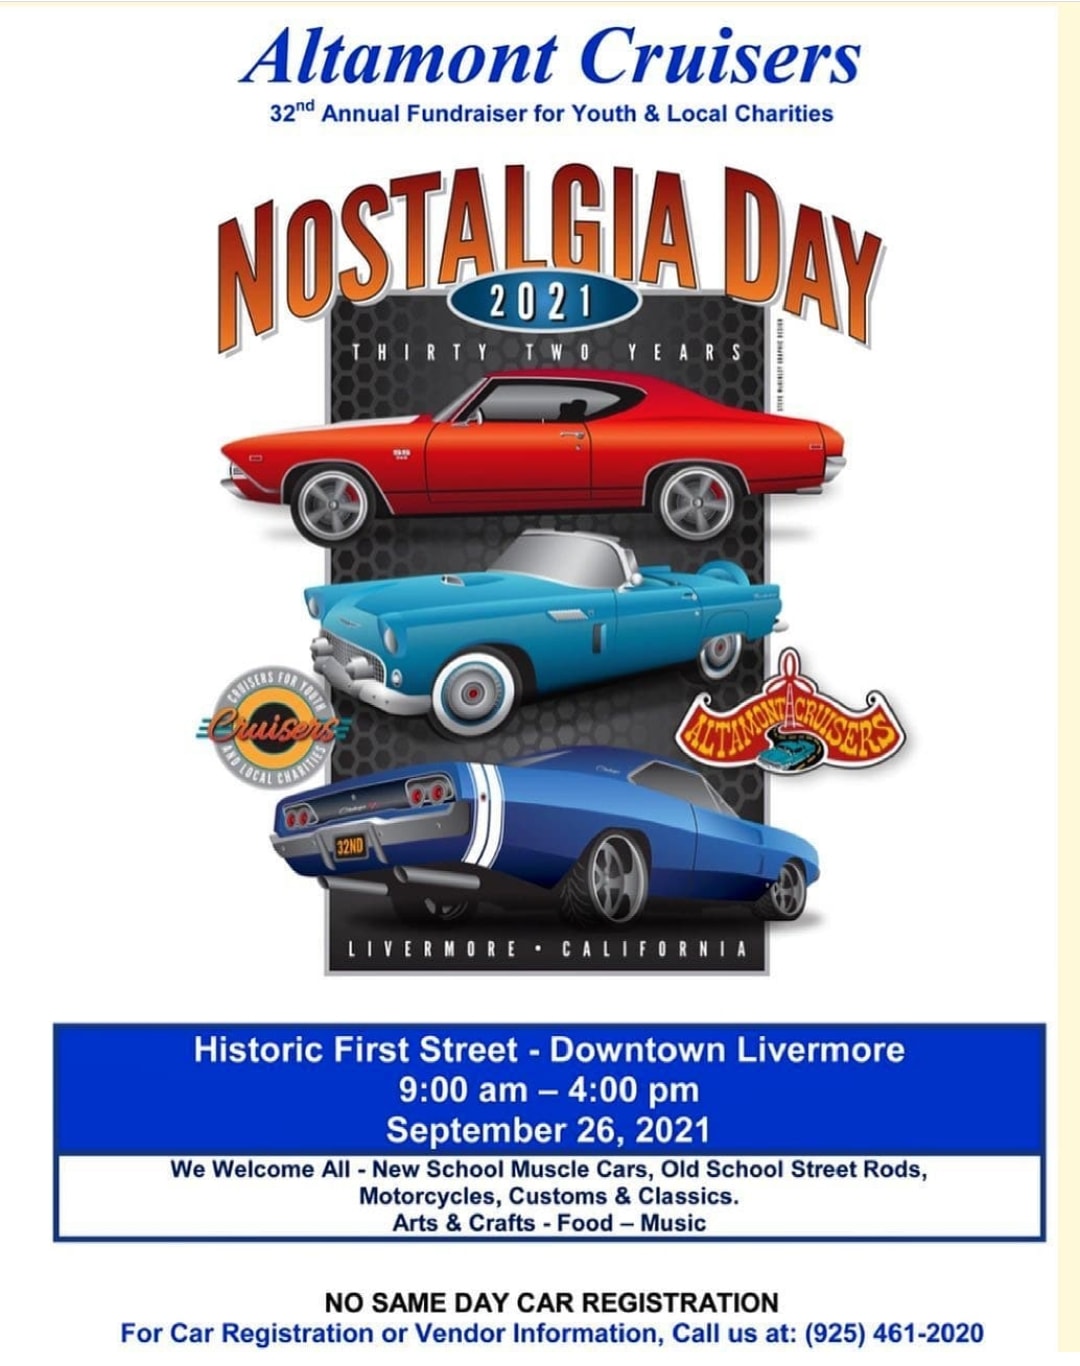 Altamont Cruisers Nostalgia Day Car Show